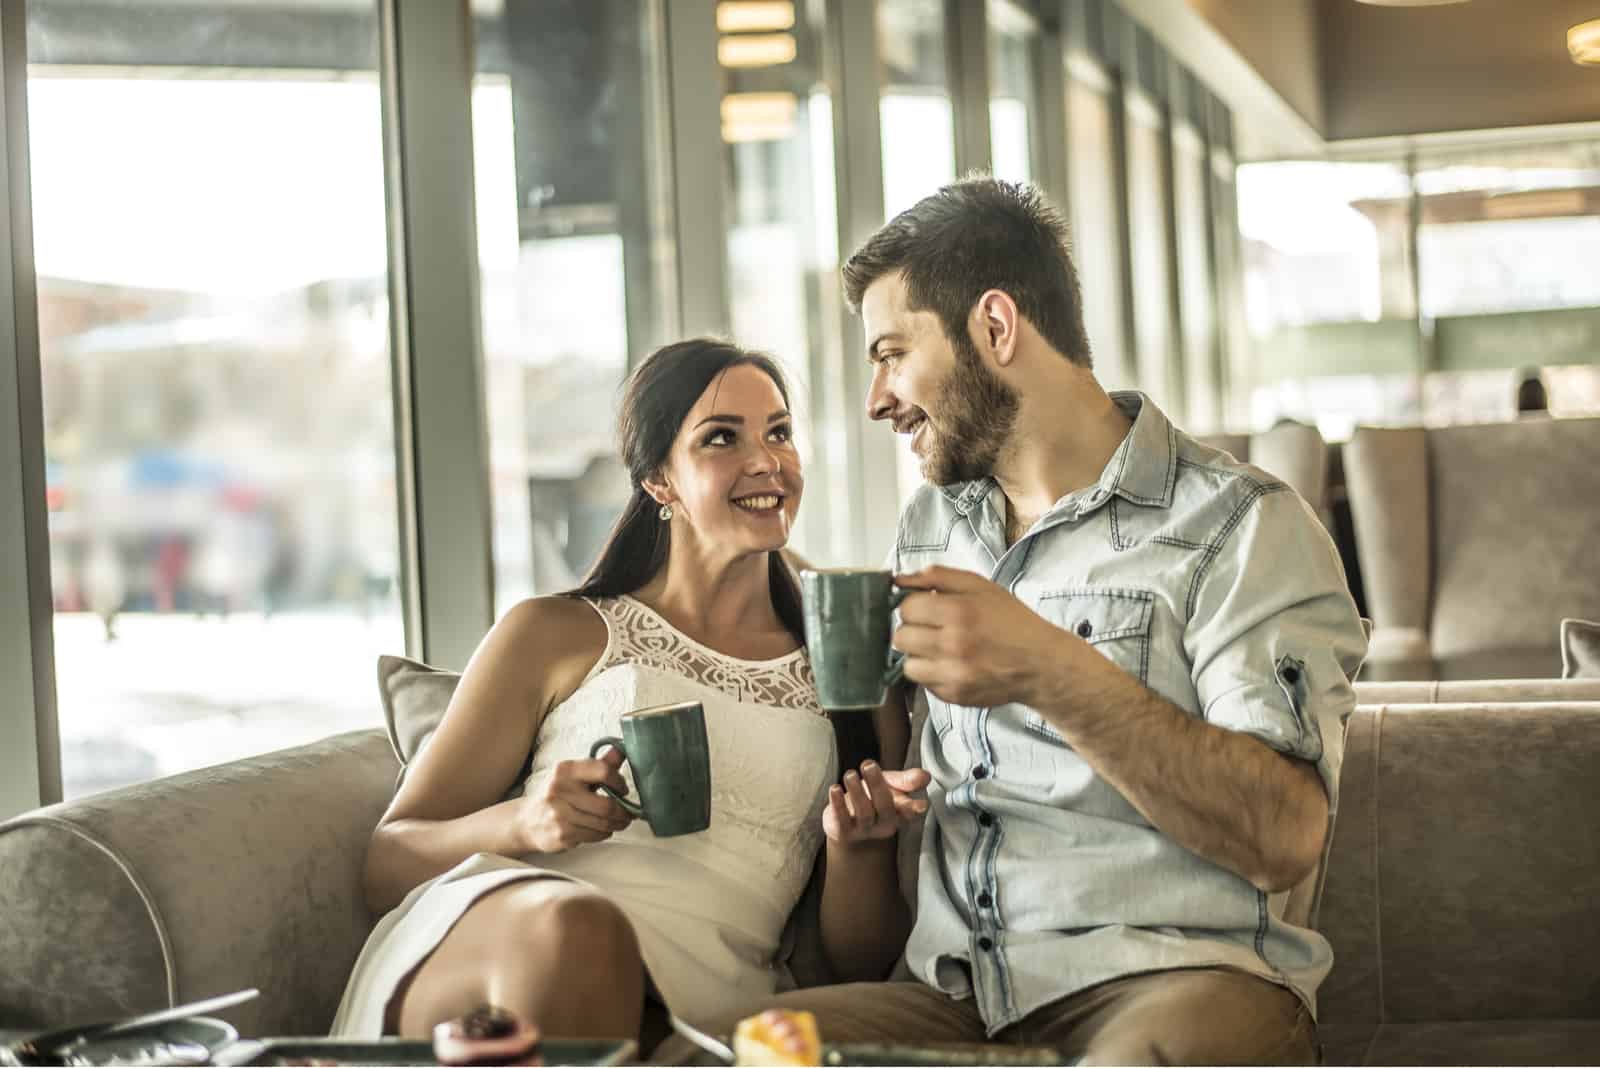 femme parlant à un homme assis dans un café